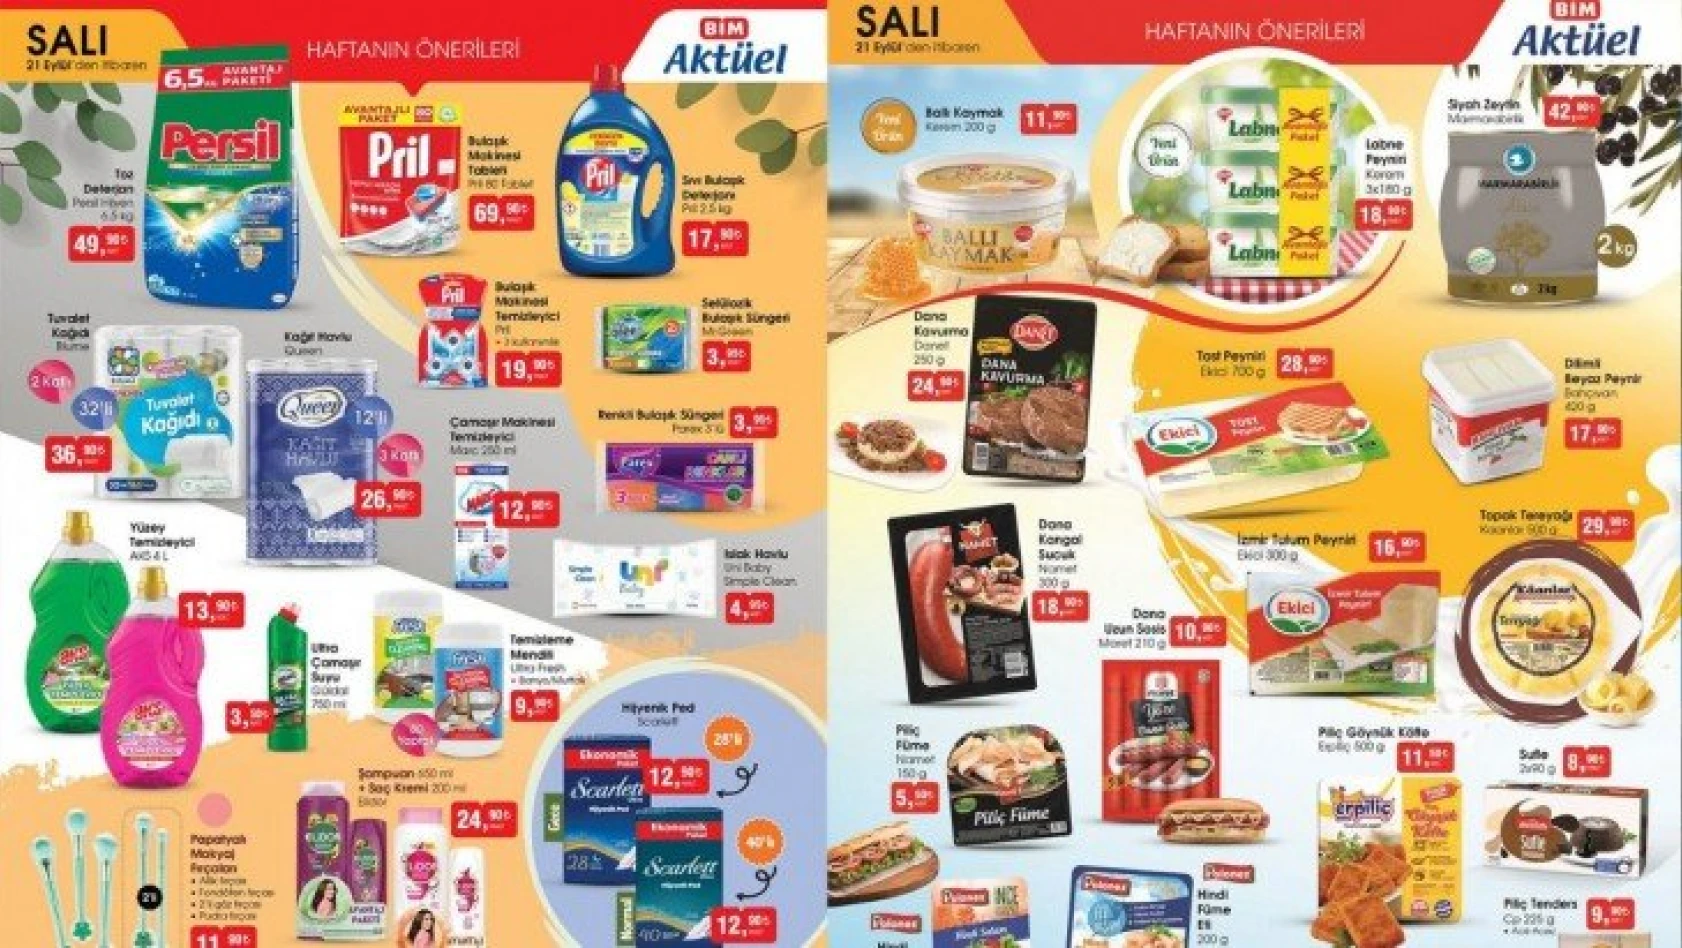 BİM aktüel ürünler kataloğu yayınlandı! BİM 21 Eylül 2021 Salı aktüel ürünler indirimli fiyat listesi…